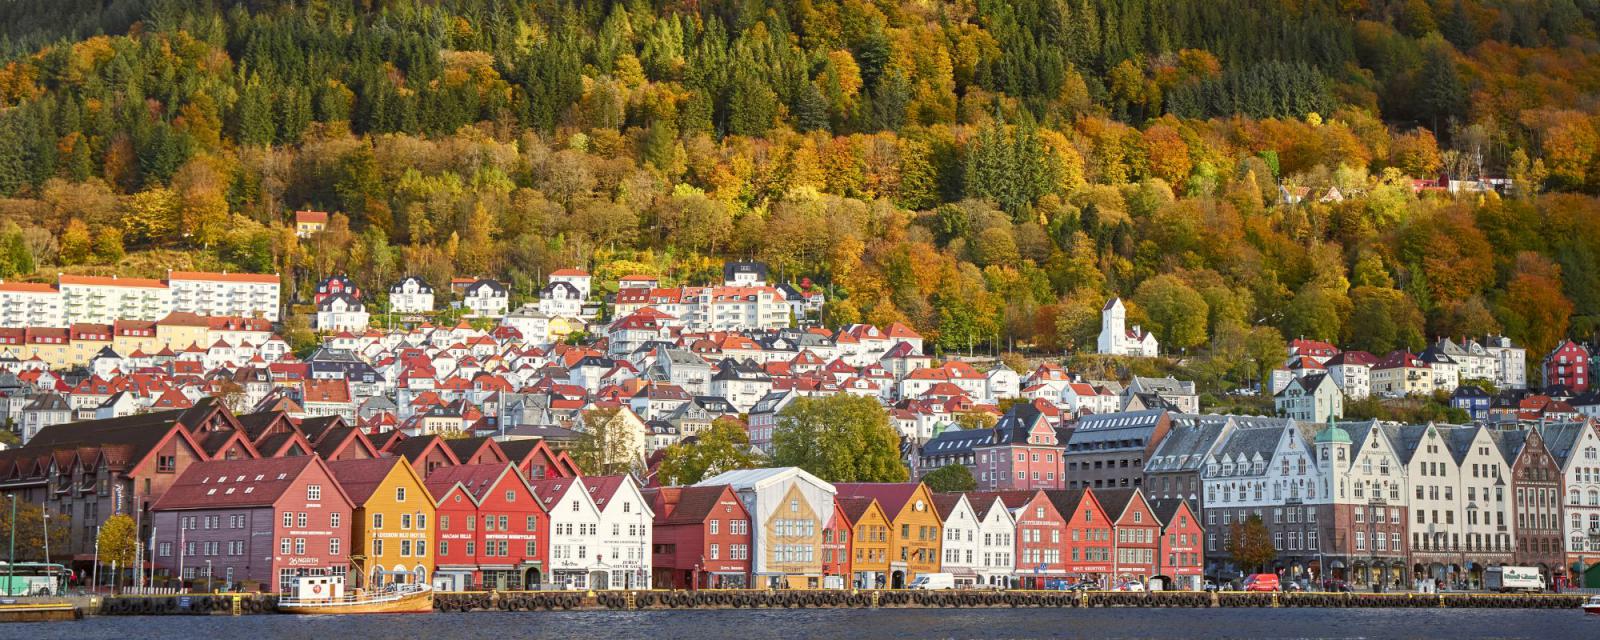 5 tips voor het najaar in Ålesund, Bergen en Stavanger 